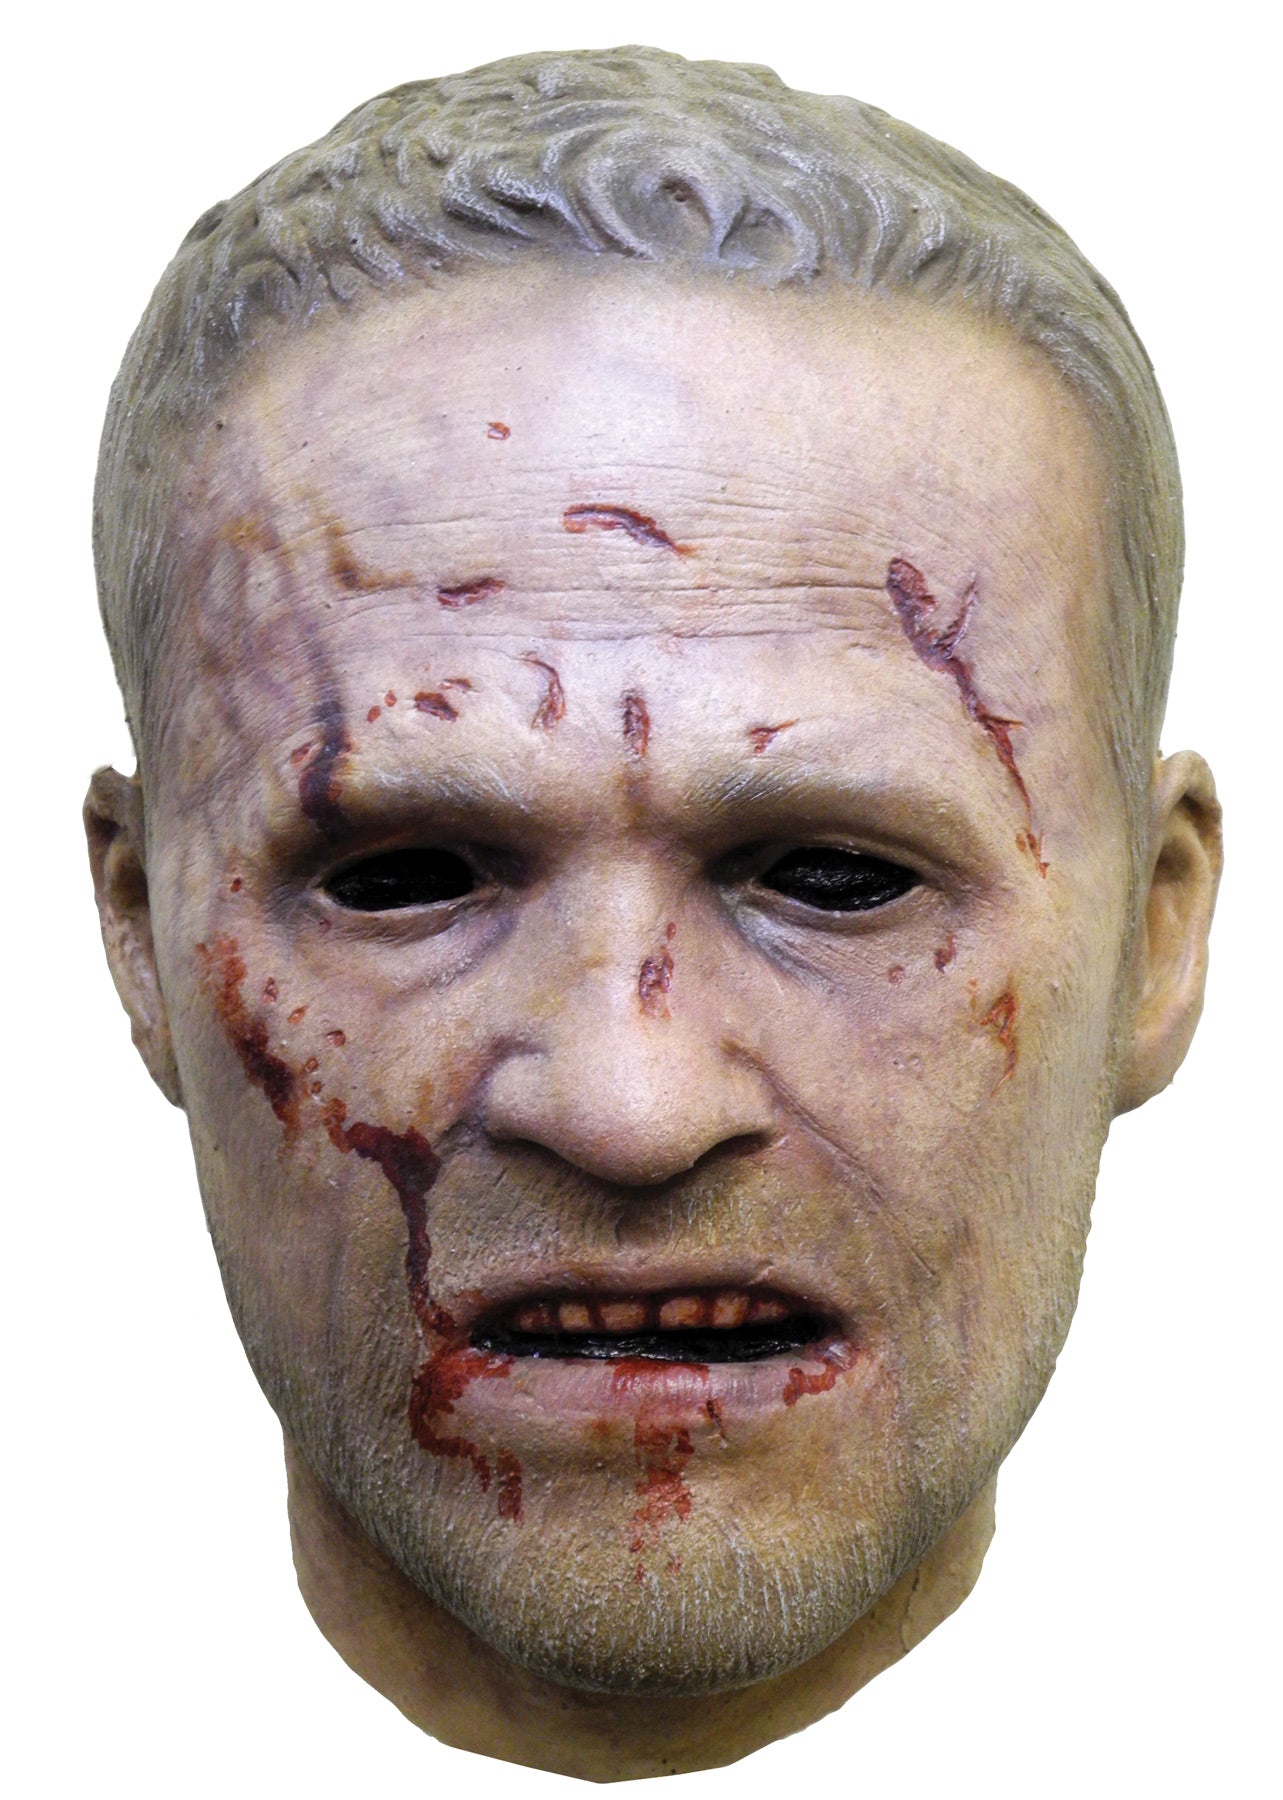 Walking Dead "Merle Dixon" Mask